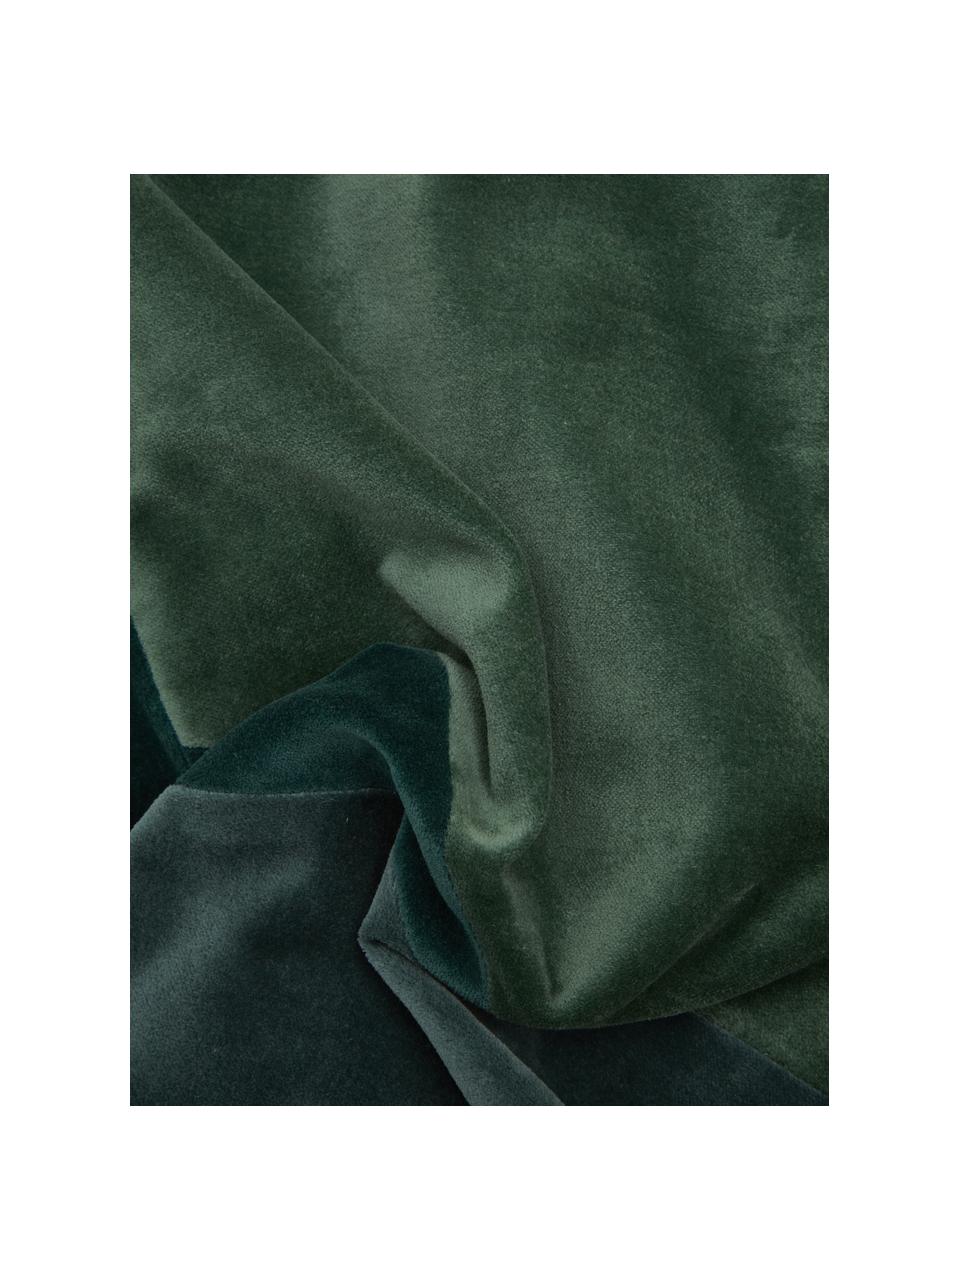 Samt-Kissen Patchwork in Grüntönen, mit Inlett, Bezug: 100% Baumwollsamt, Grüntöne, 30 x 50 cm